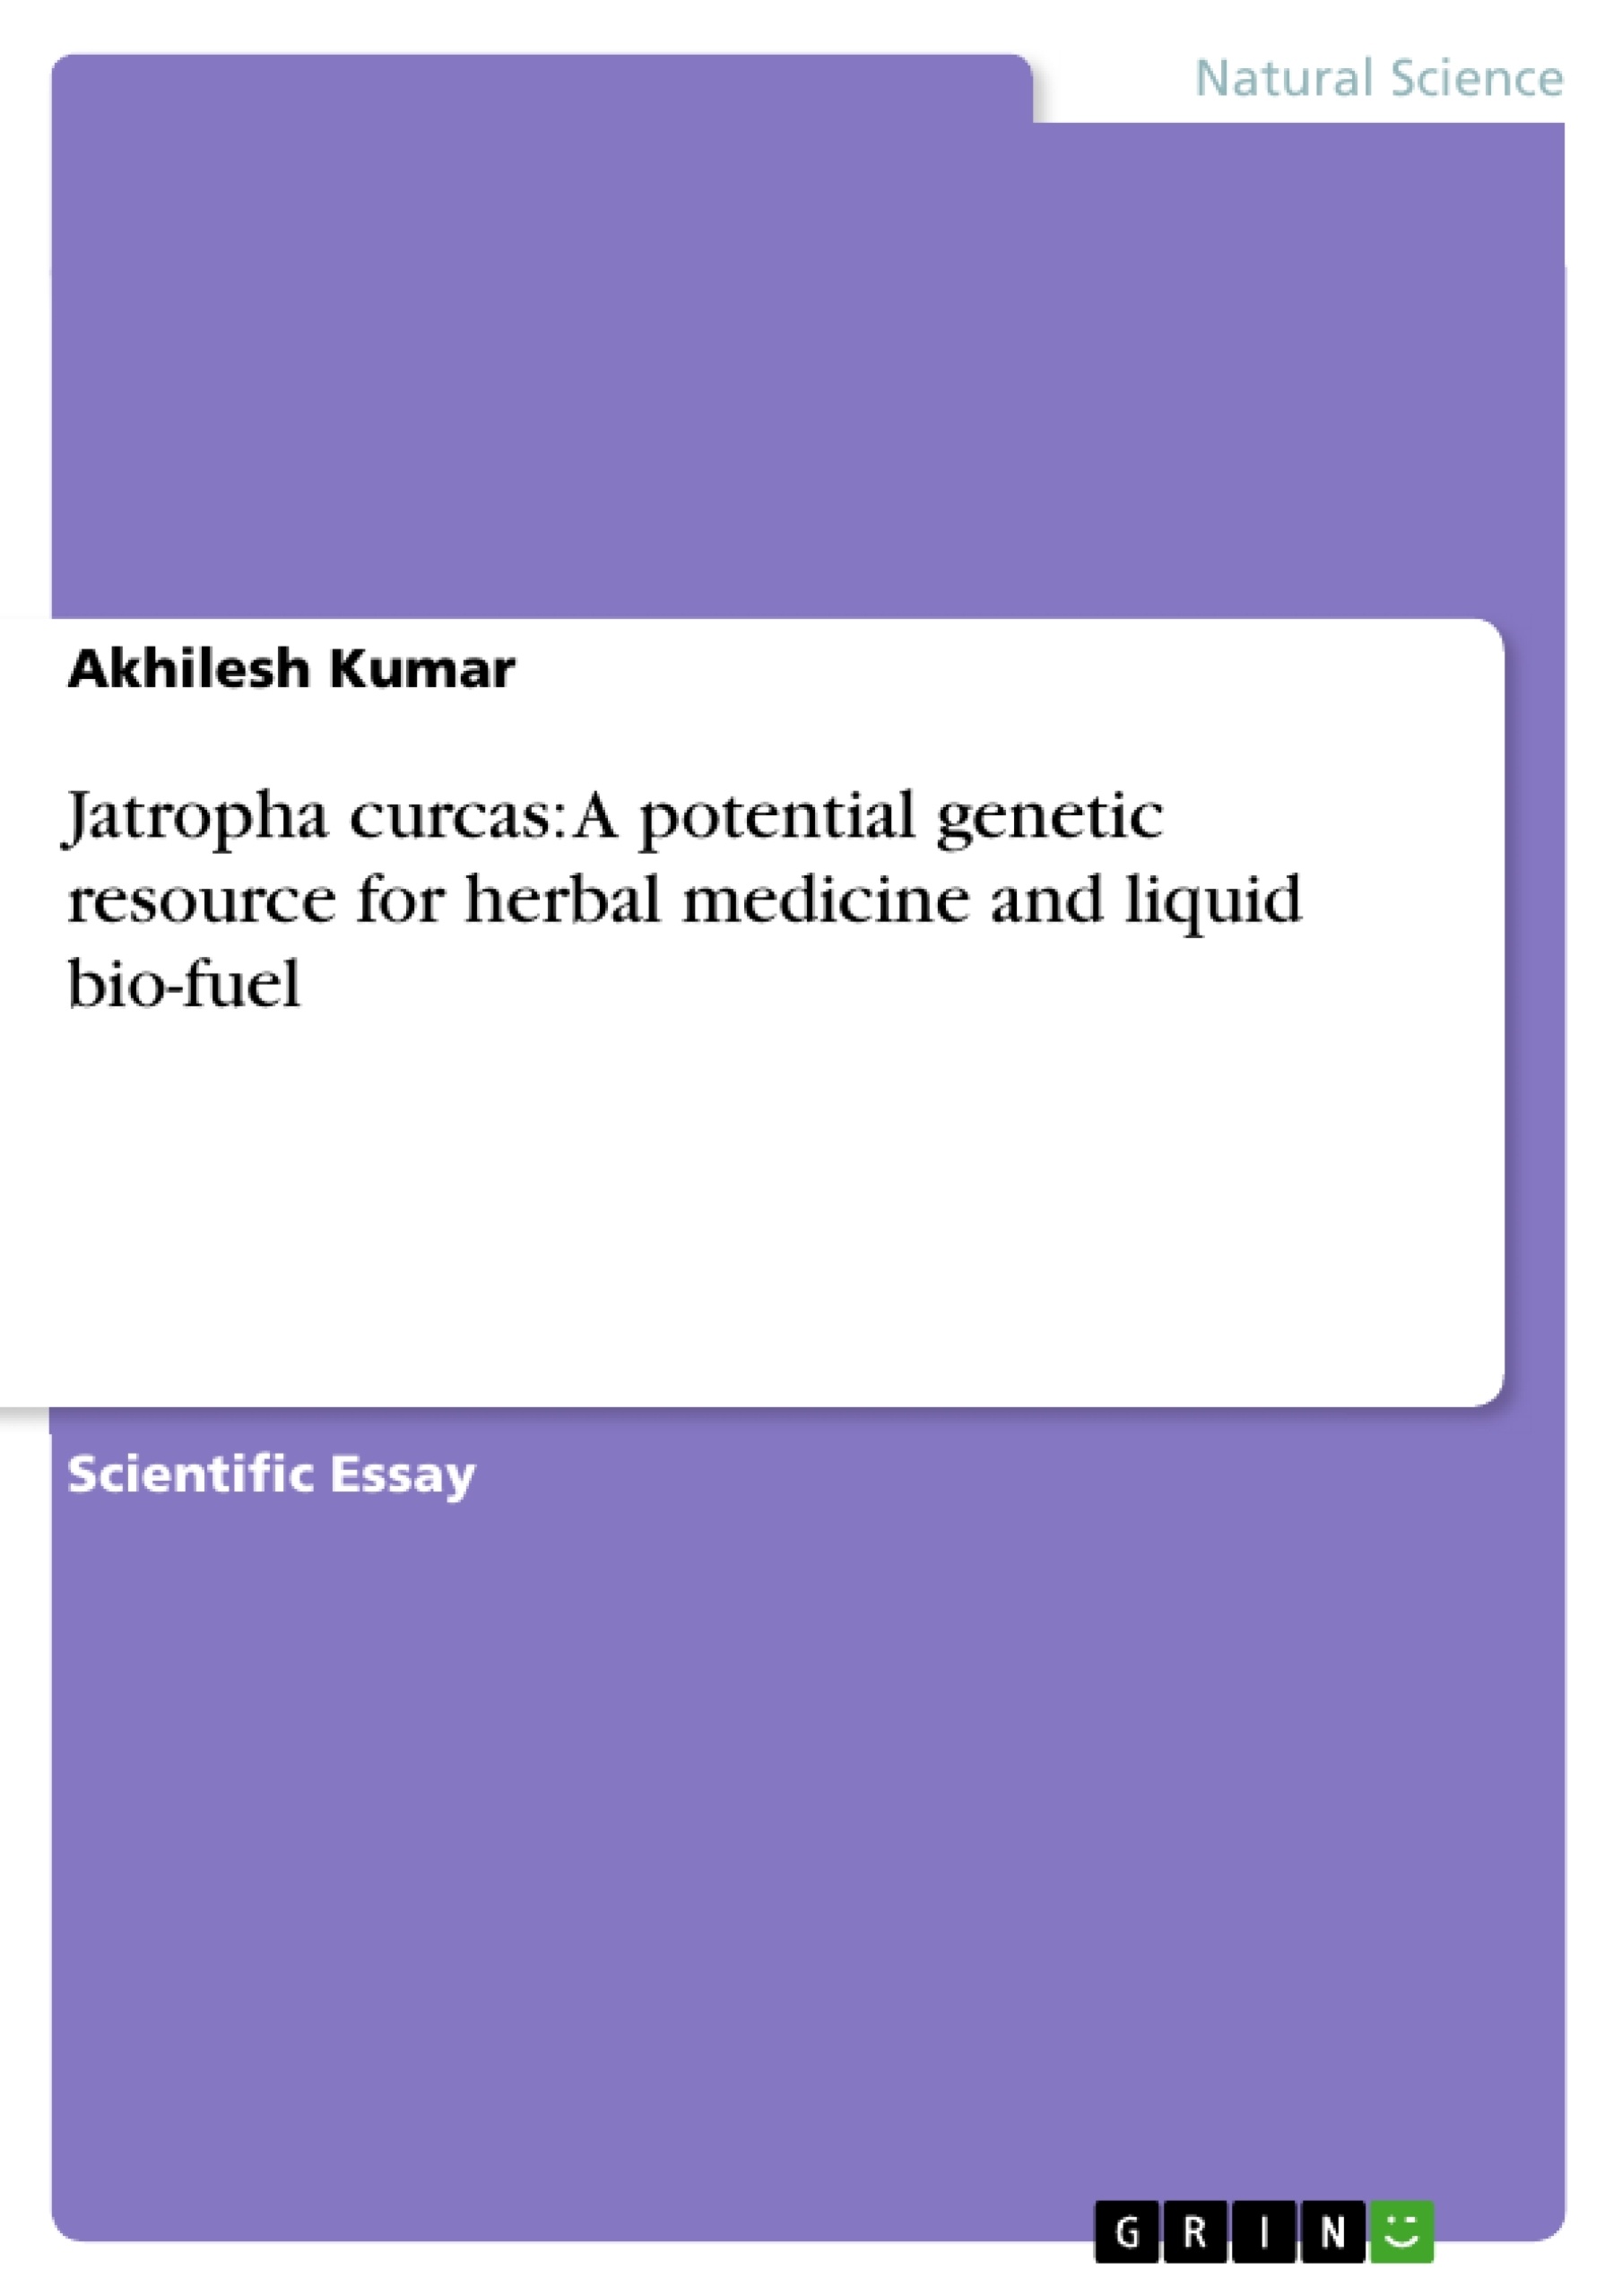 Título: Jatropha curcas: A potential genetic resource for herbal medicine and liquid bio-fuel